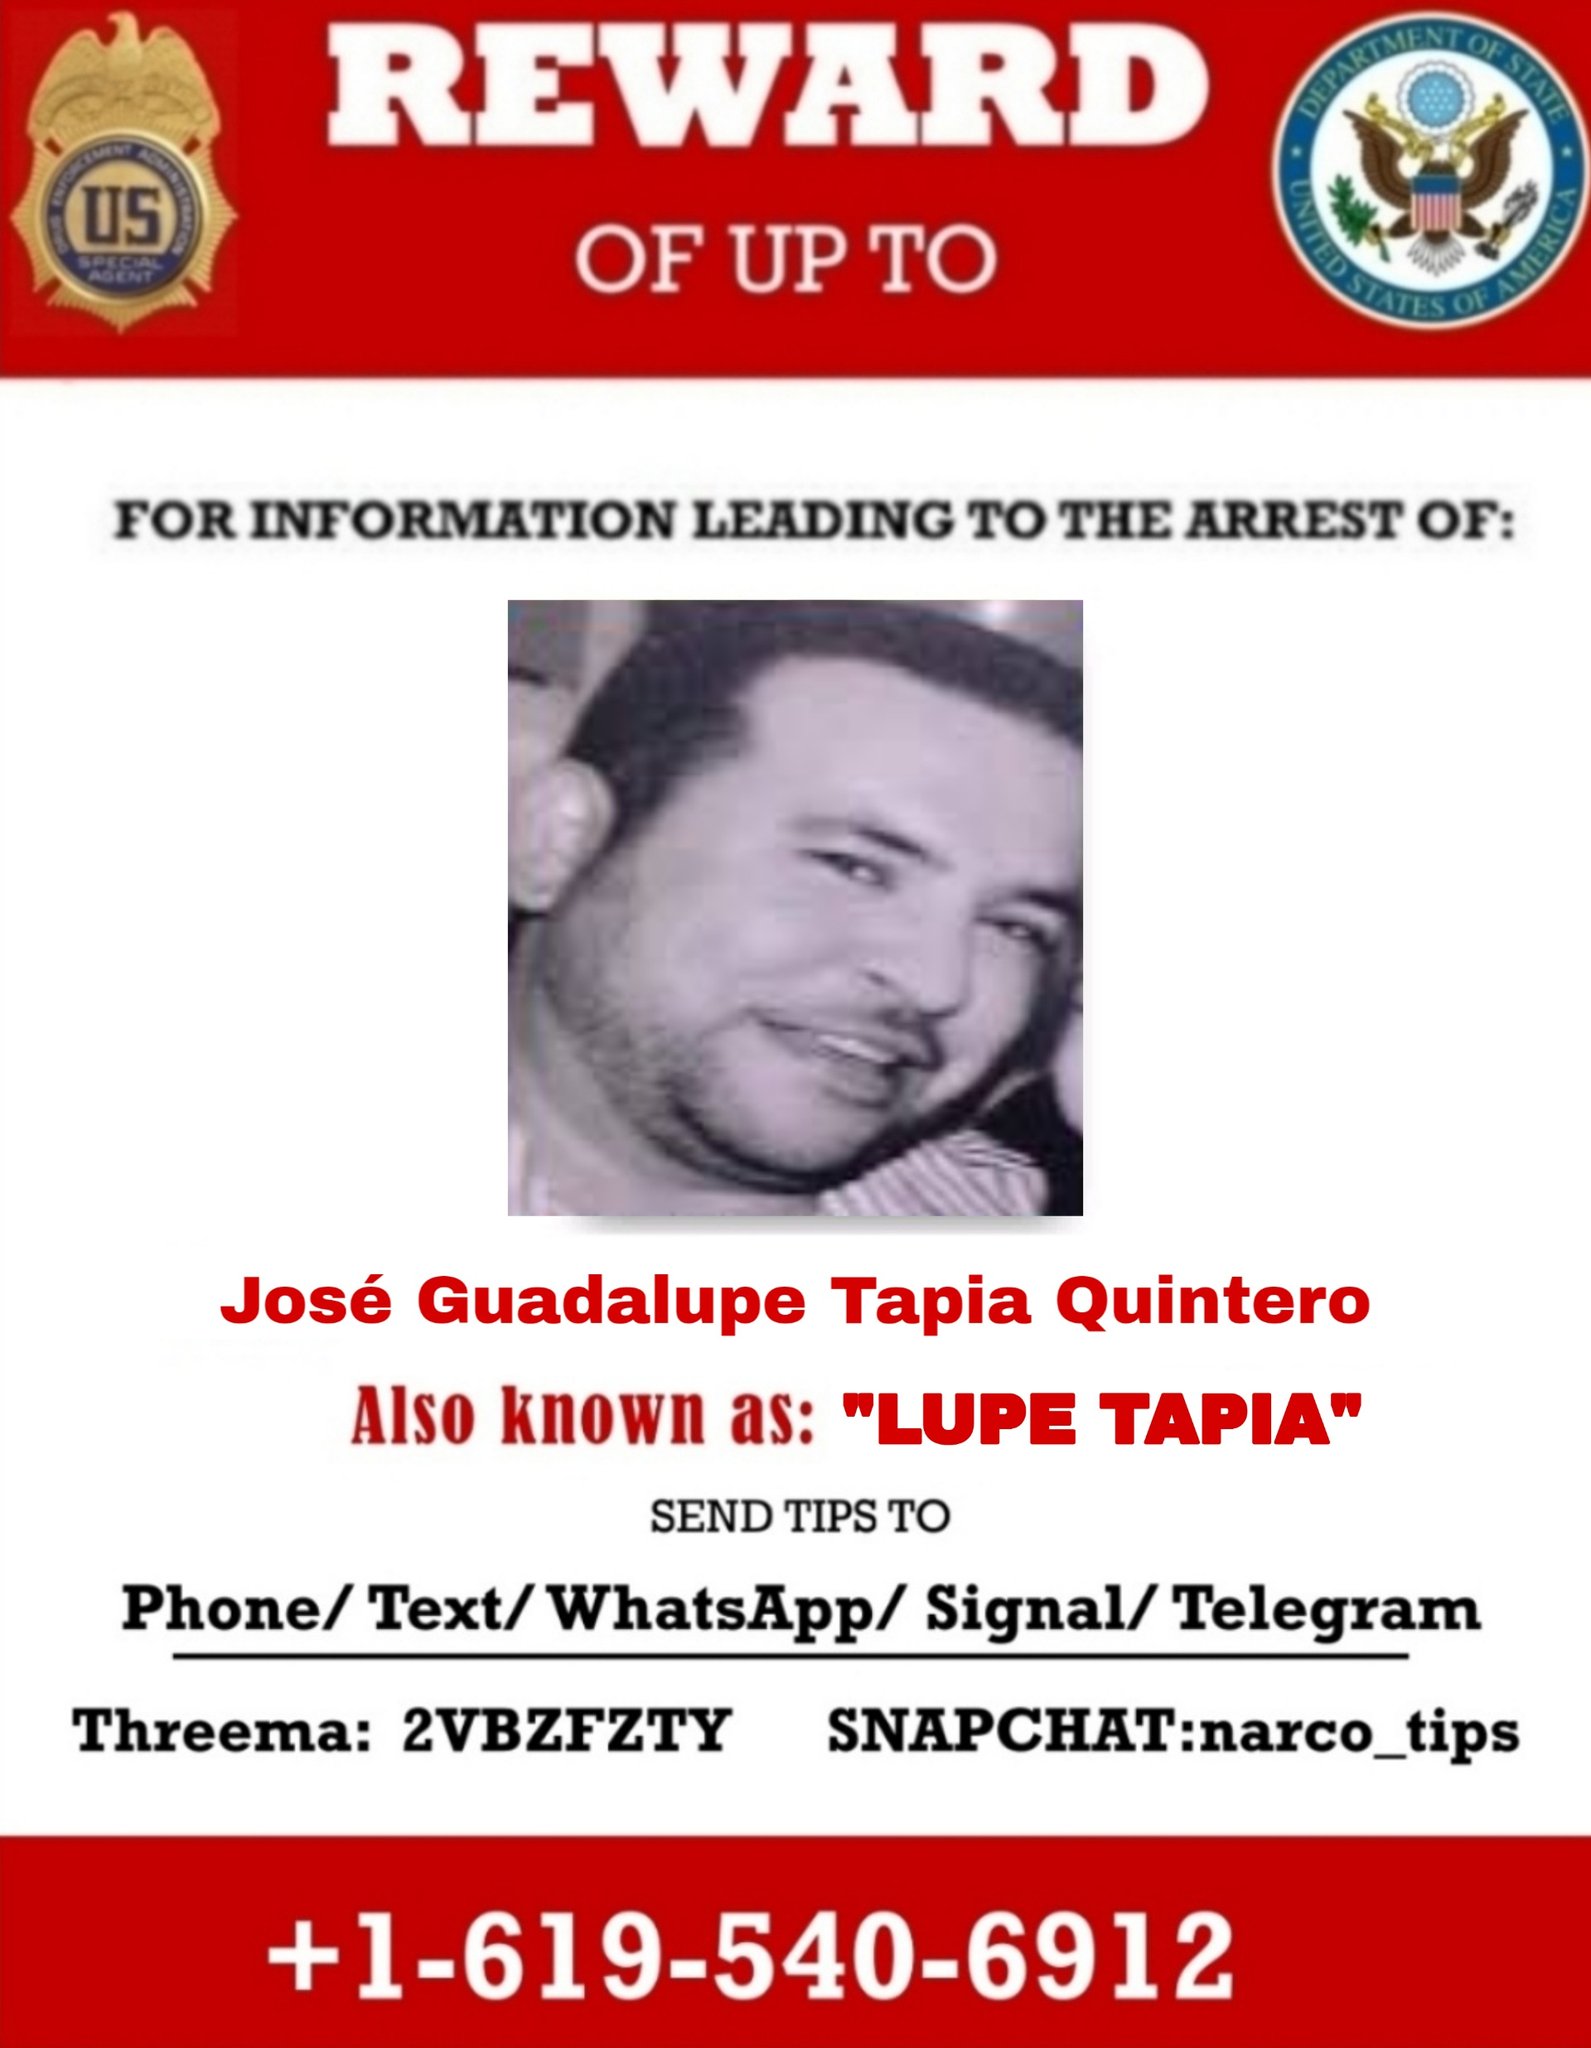 Todo indica que Tapia Quintero sigue operando con su estructura de transportes (Foto: USAGOV)